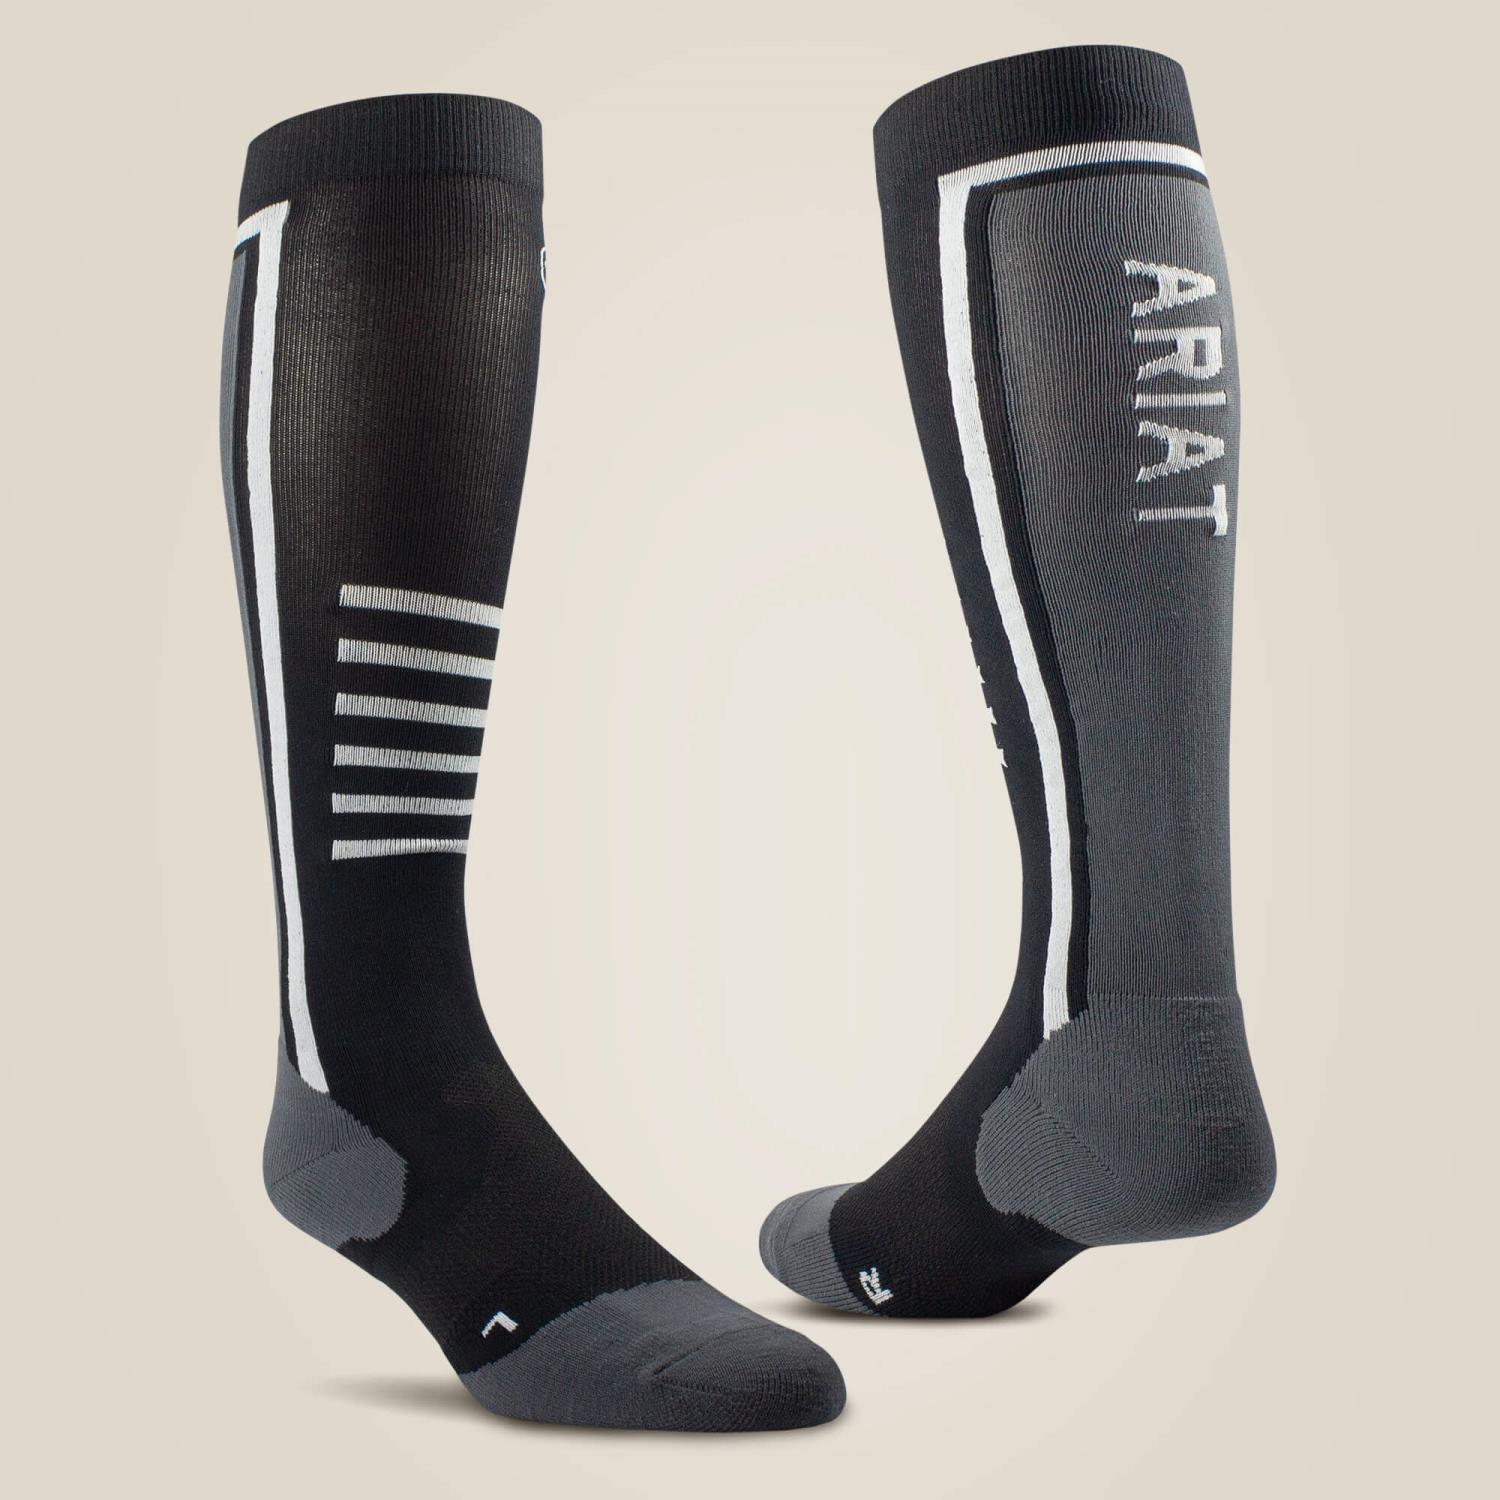 AriatTEK Slimline Performance Socks. Onesize